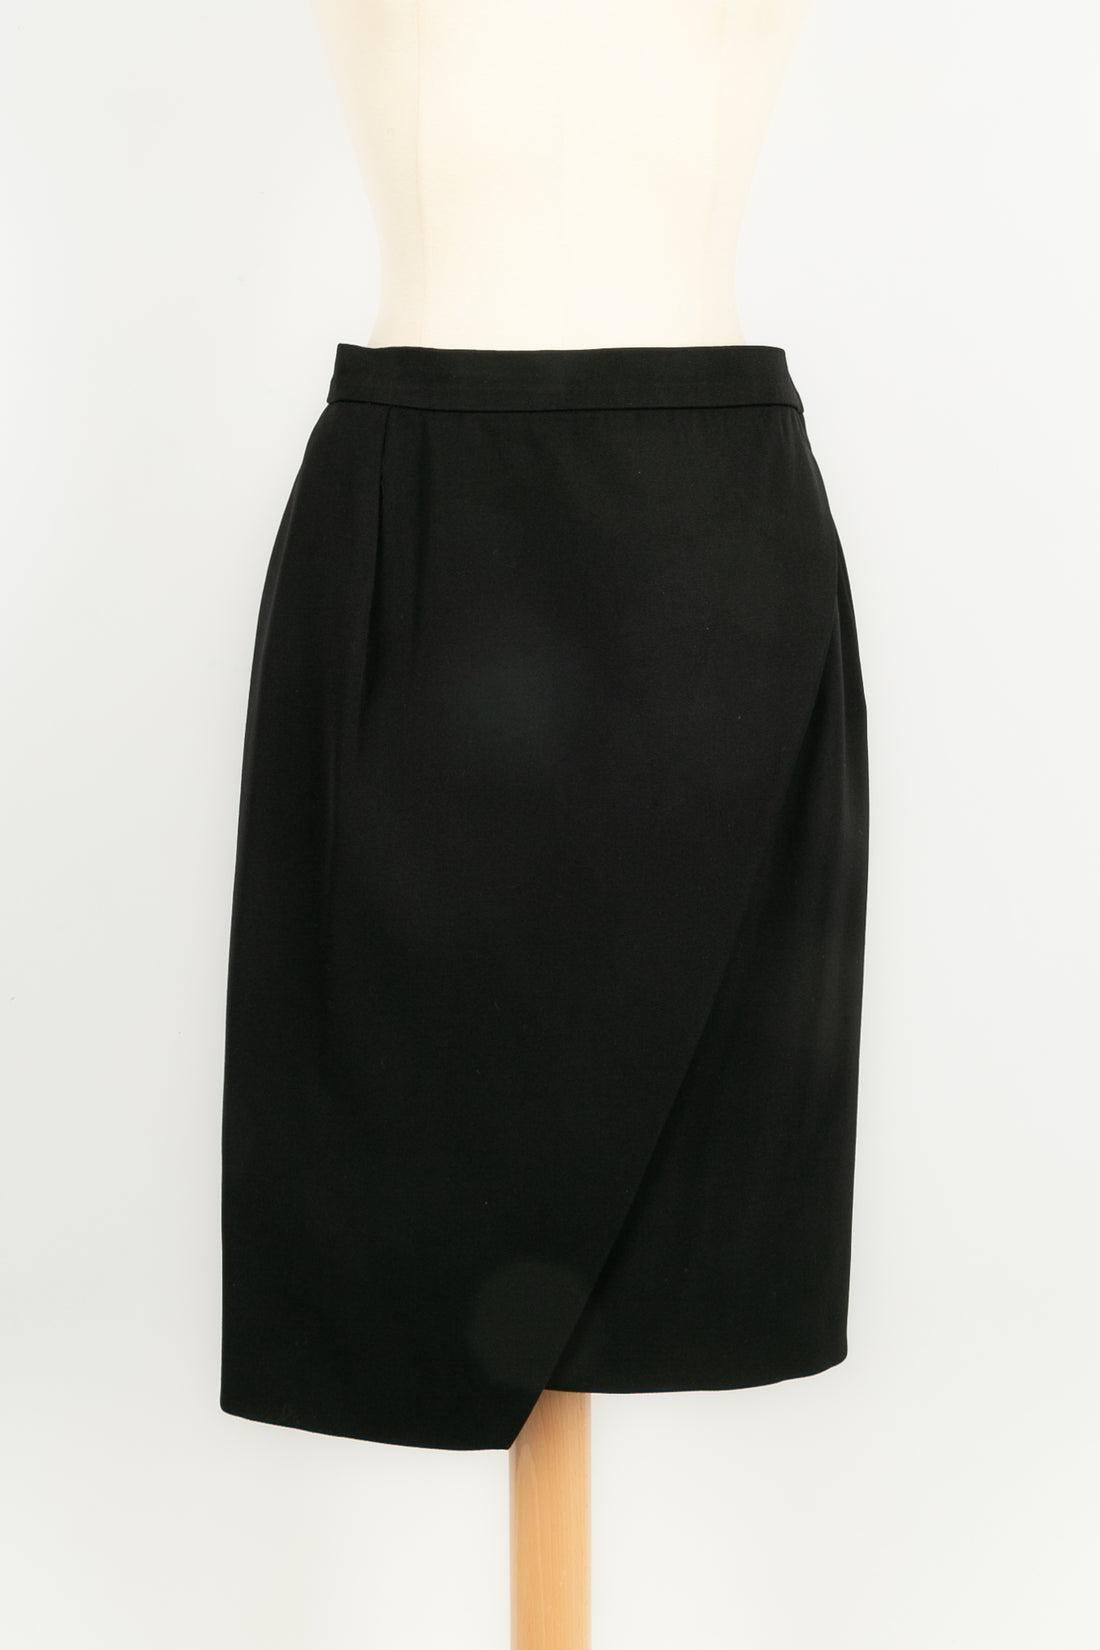 Yves Saint Laurent Combinaison jupe noire en vente 3